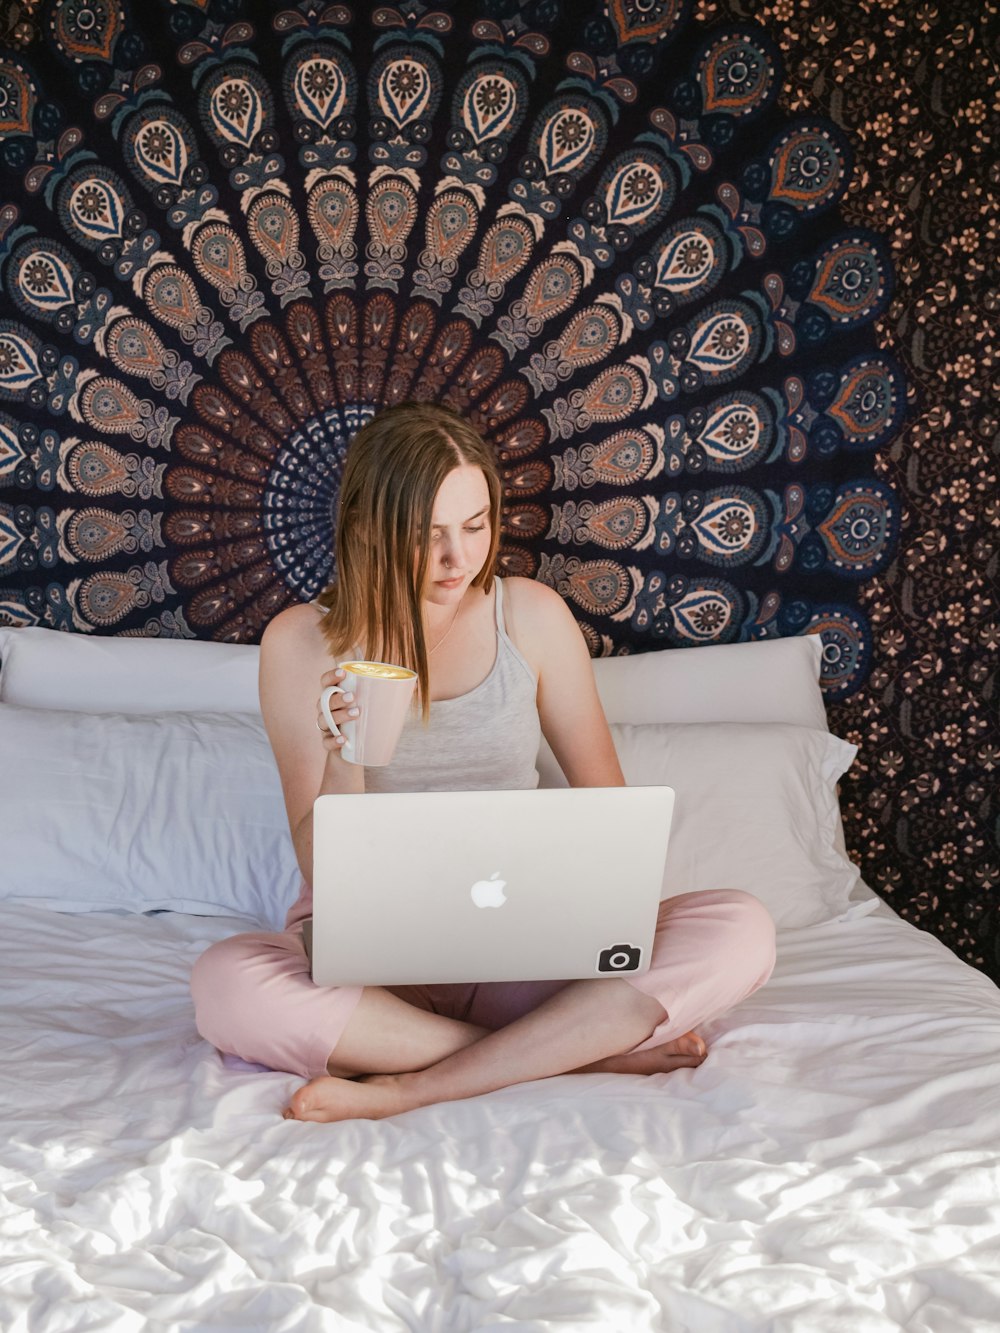 マグカップを持ちながらノートパソコンを使ってベッドに座っている女性